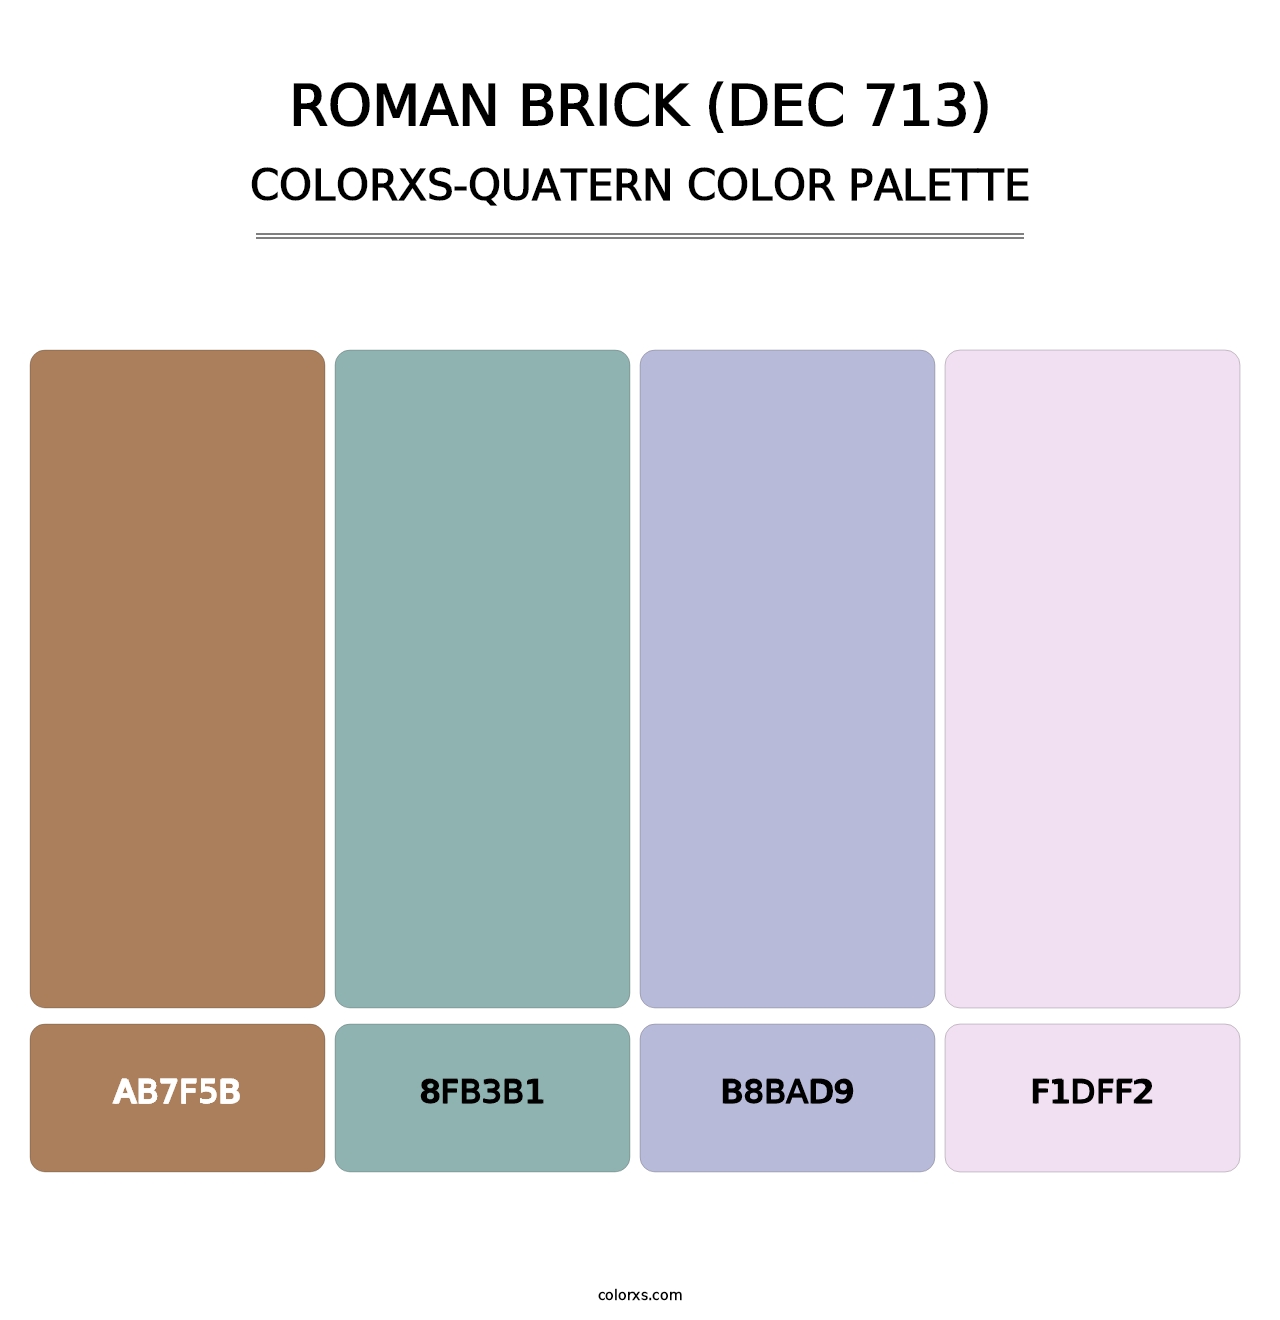 Roman Brick (DEC 713) - Colorxs Quatern Palette